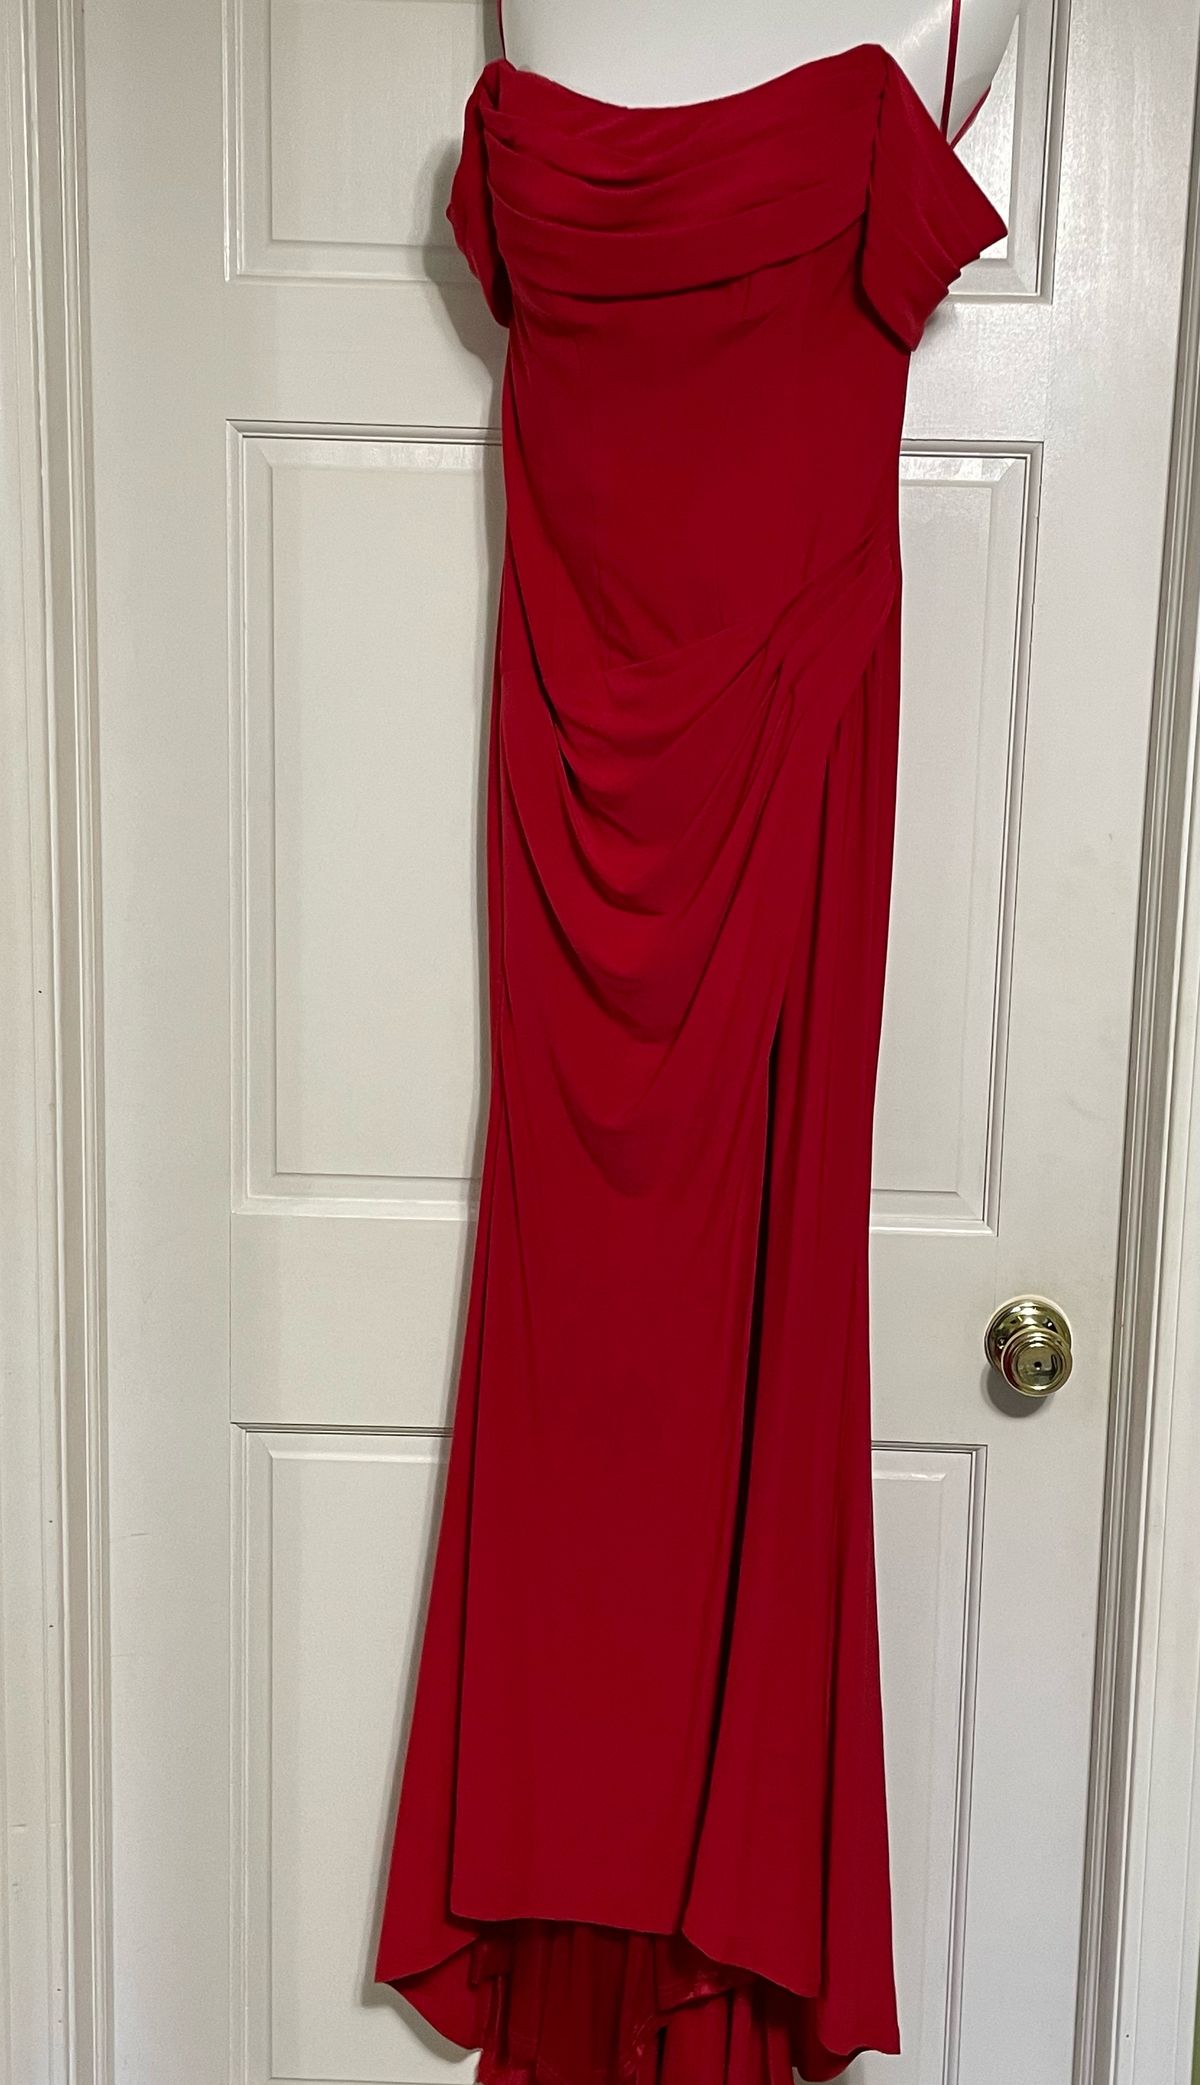 Size 2 Off The Shoulder Red Side Slit Dress on Queenly